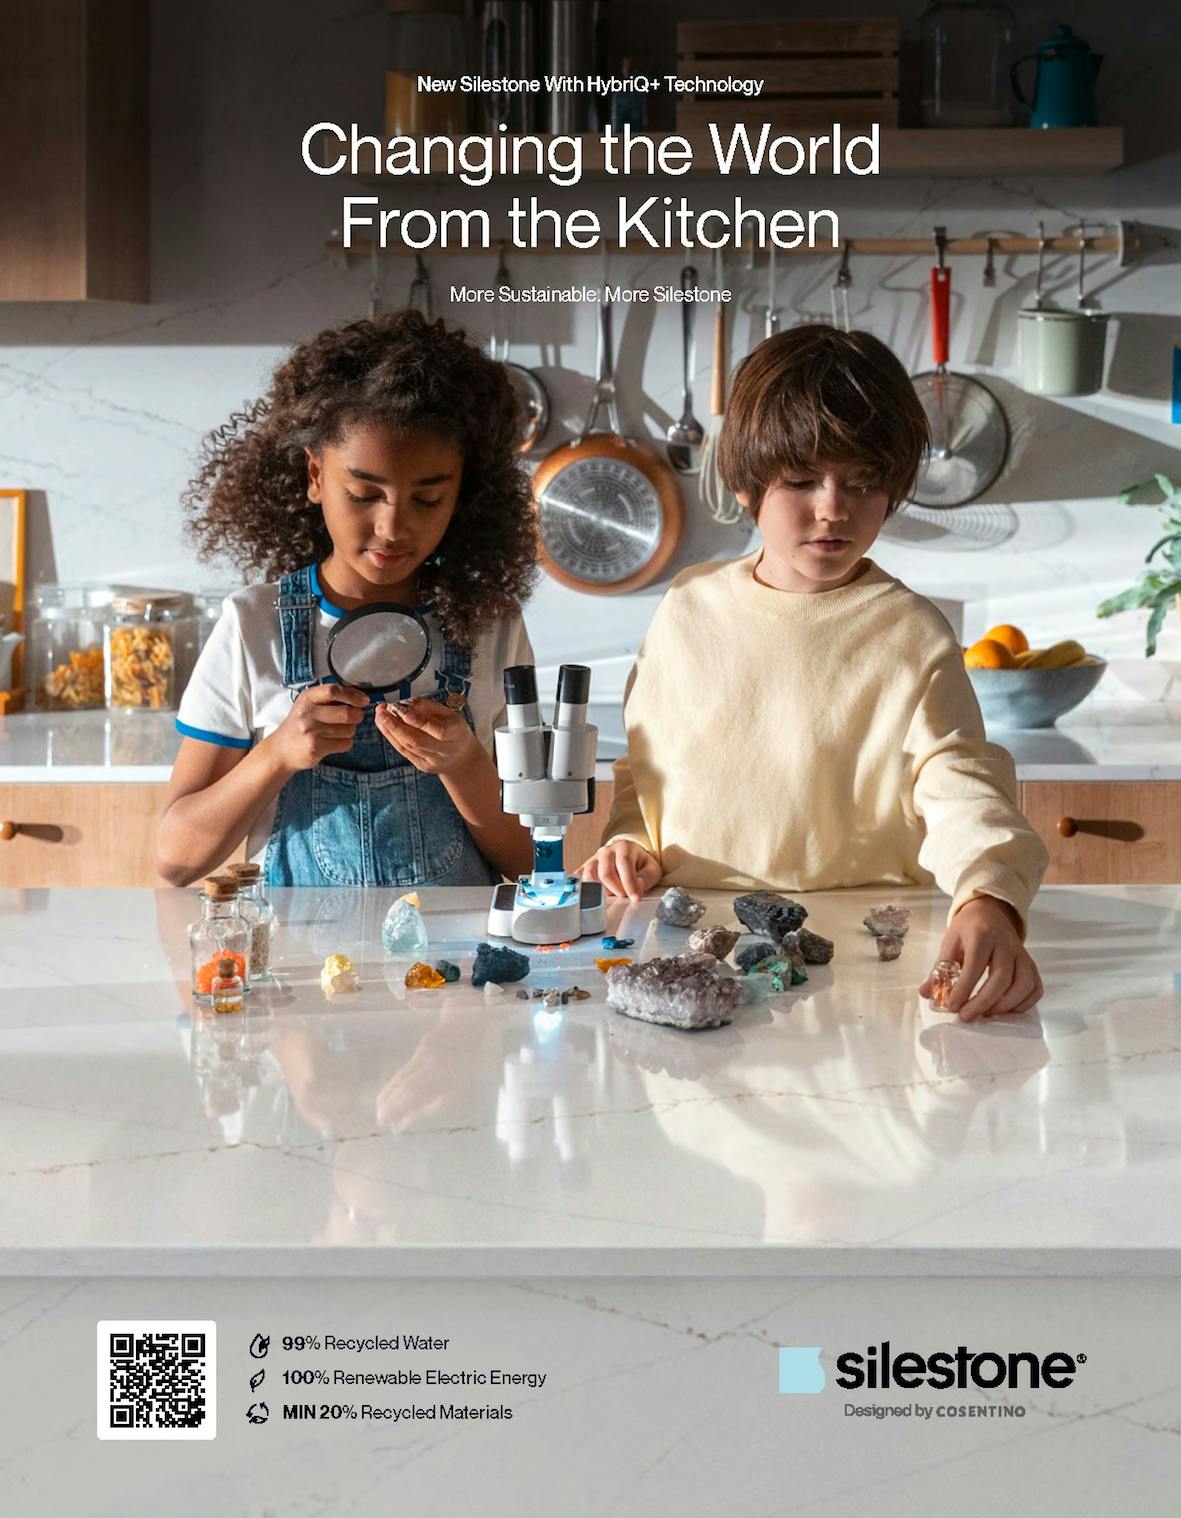 Image of MicrosoftTeams image 3.jpg?auto=format%2Ccompress&ixlib=php 3.3 in "Förändra världen från köket": ny Silestone-kampanj kring innovation och hållbarhet för att förändra världen - Cosentino